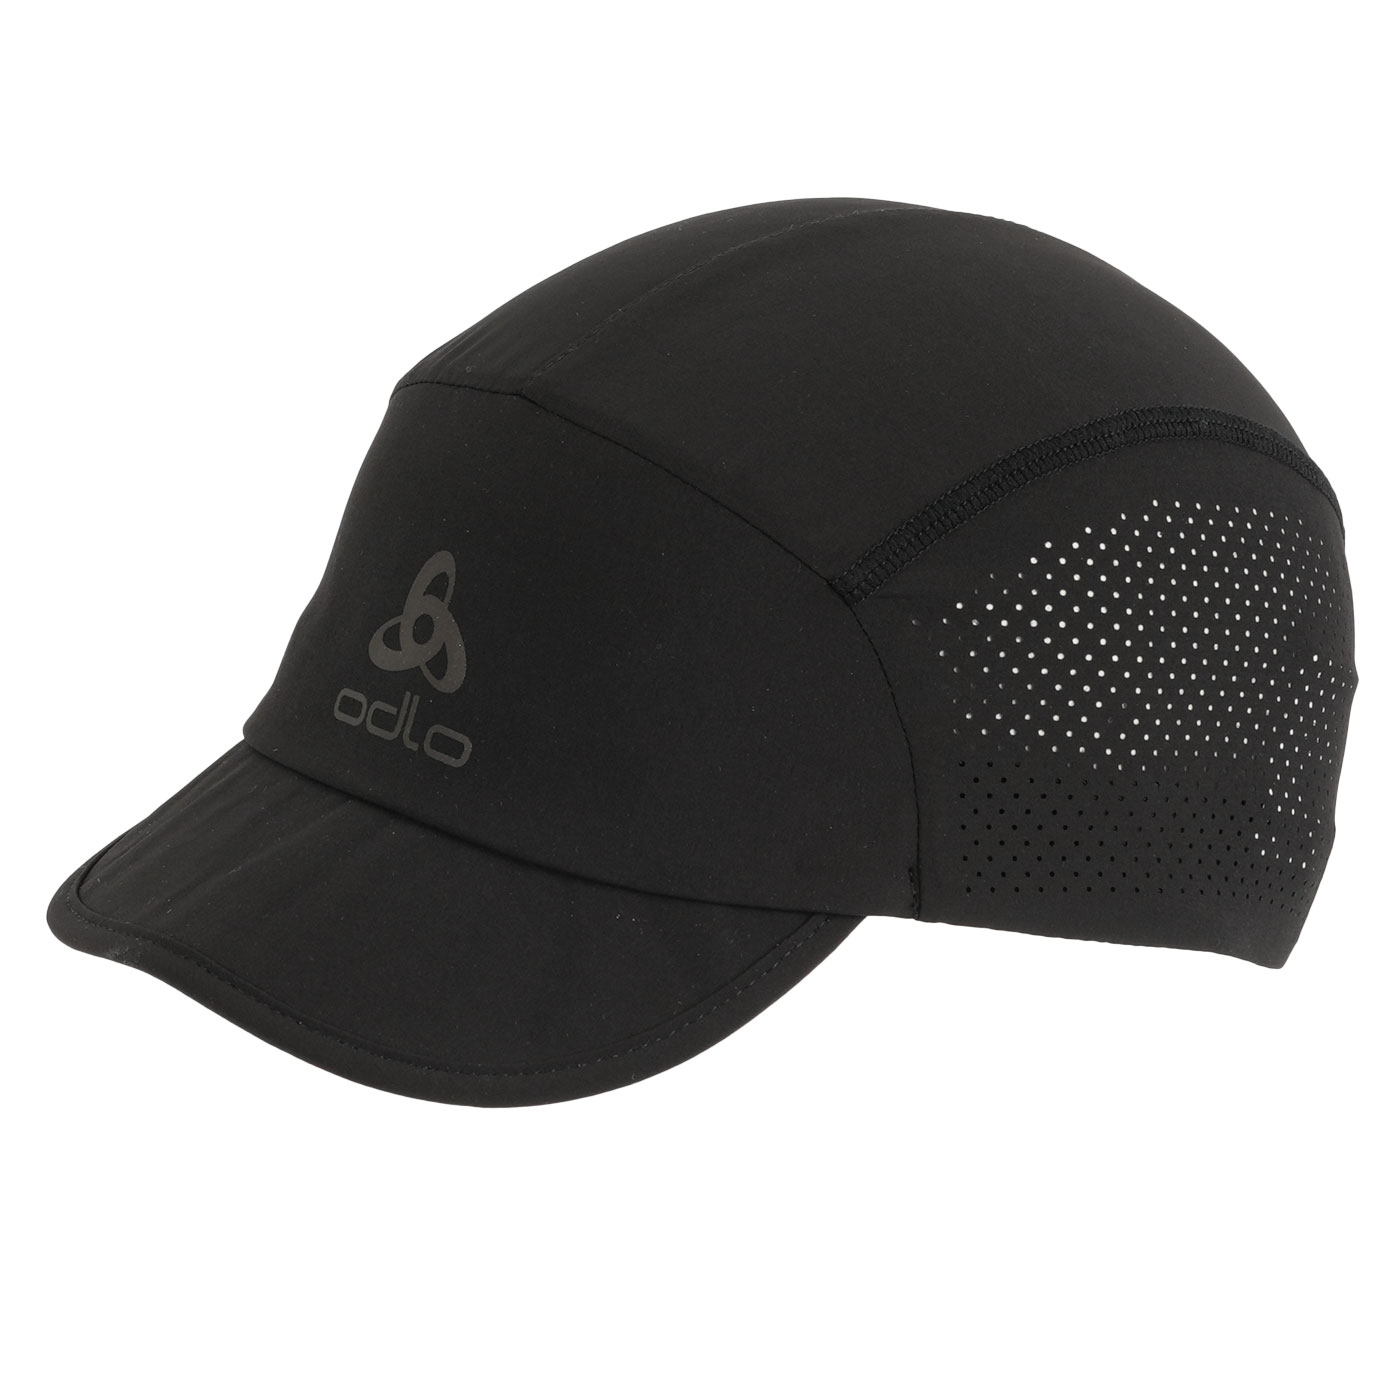 Produktbild von Odlo Performance Pro Cap - schwarz